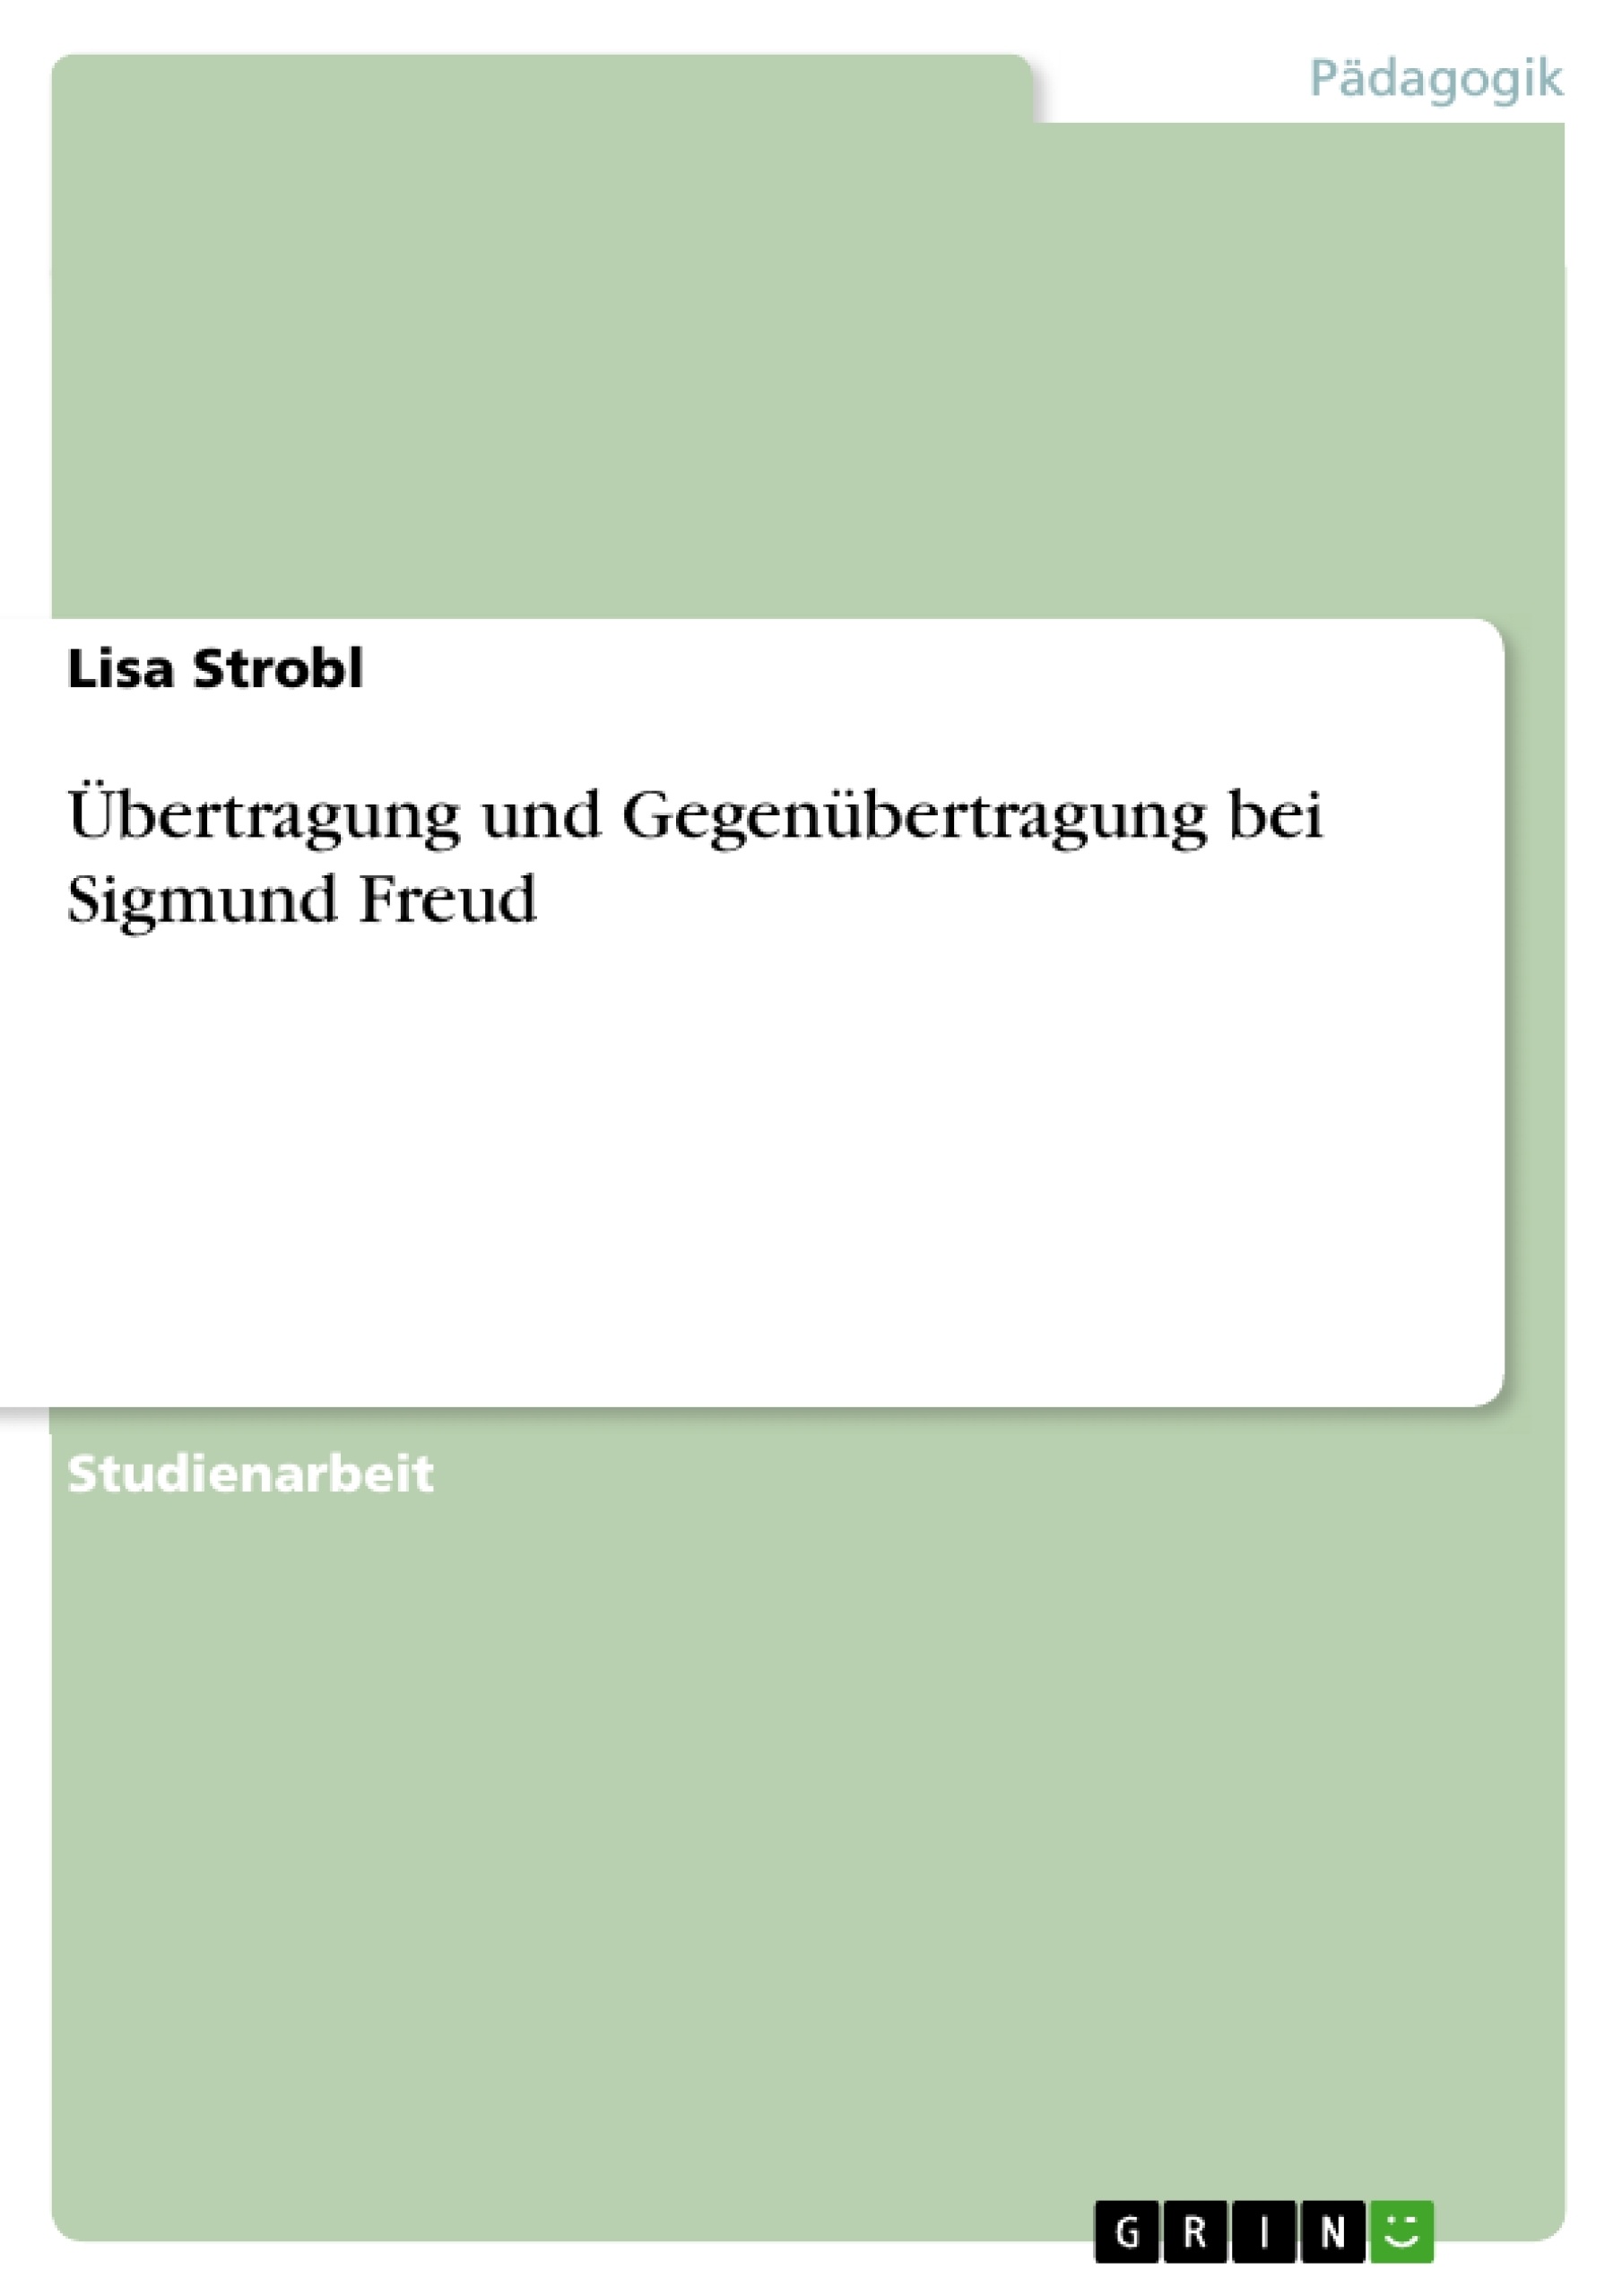 Título: Übertragung und Gegenübertragung bei Sigmund Freud